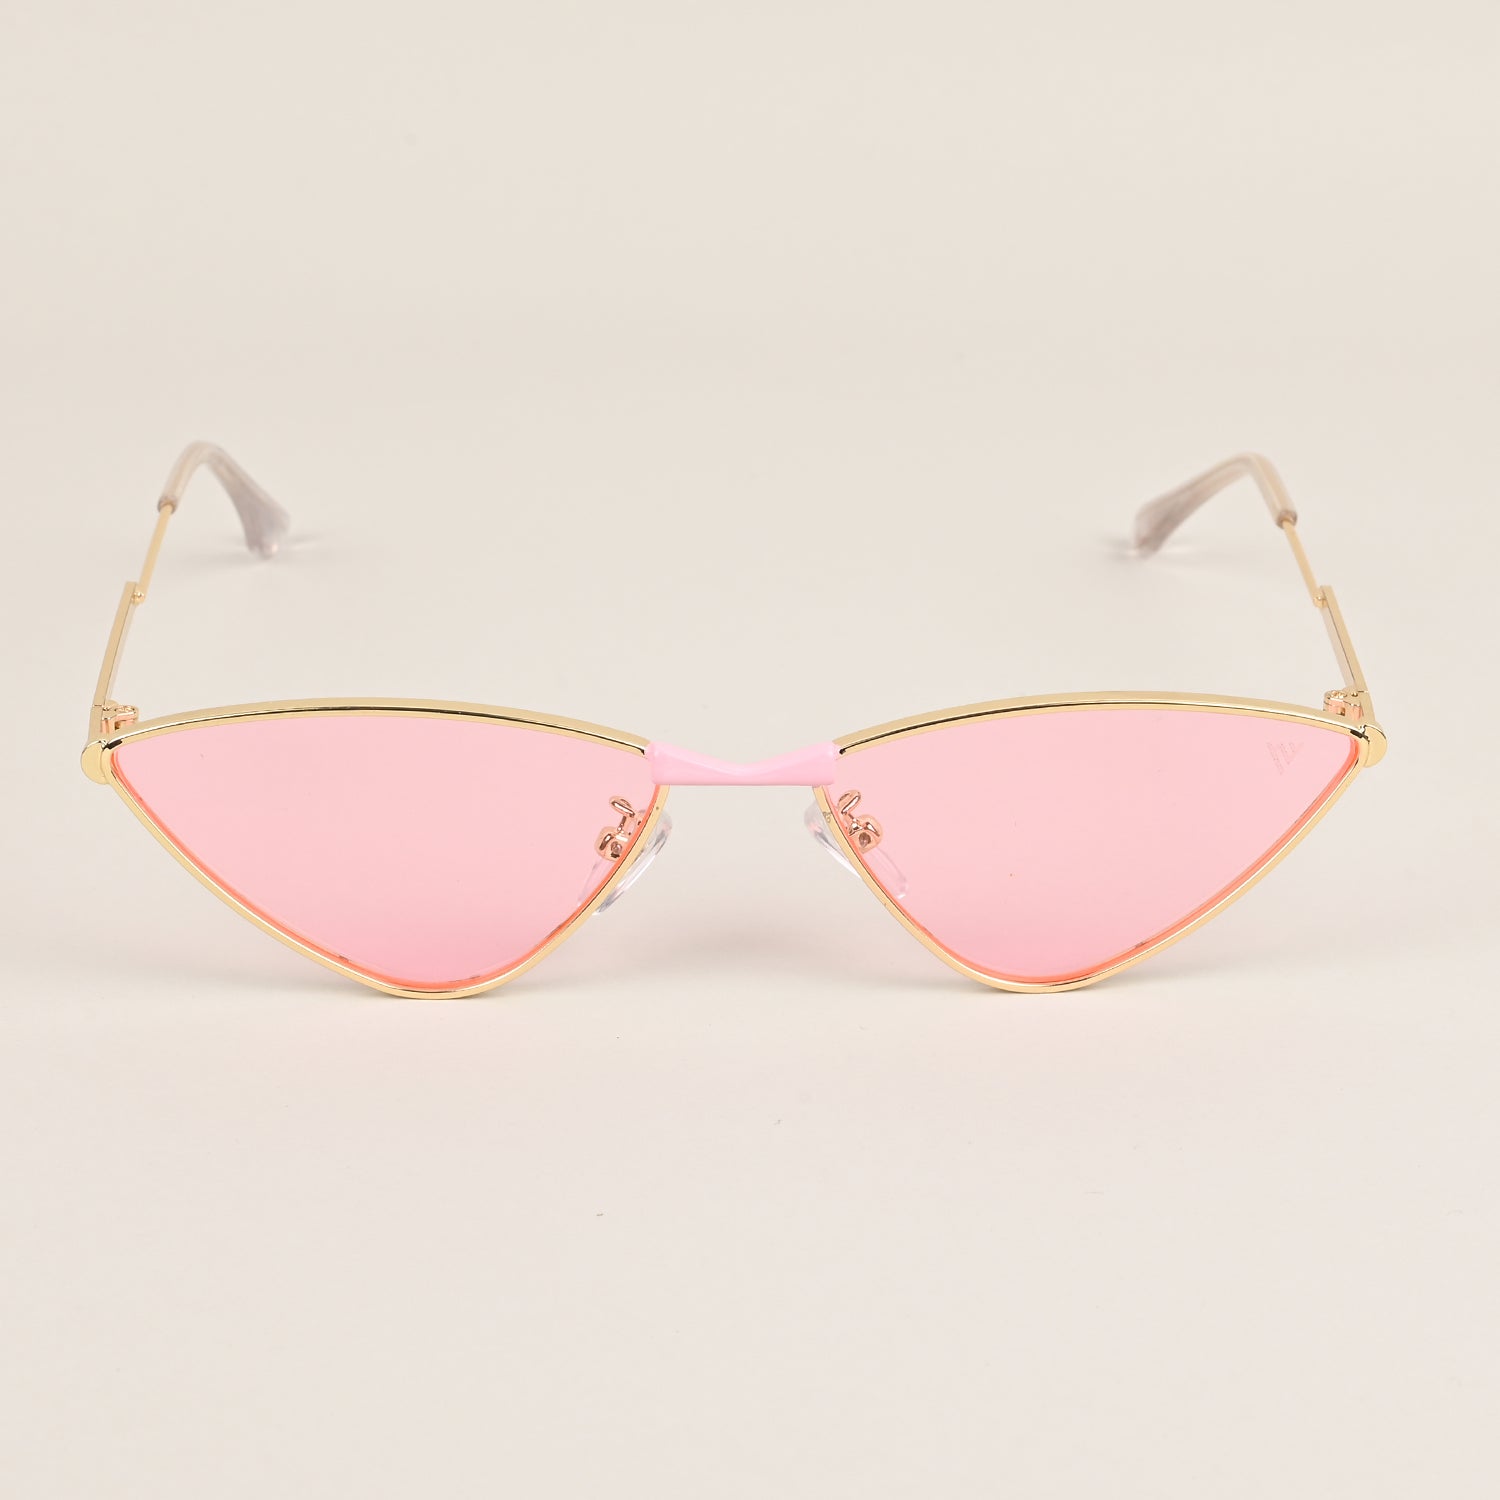 Voyage Pink Cateye Sunglasses MG3436